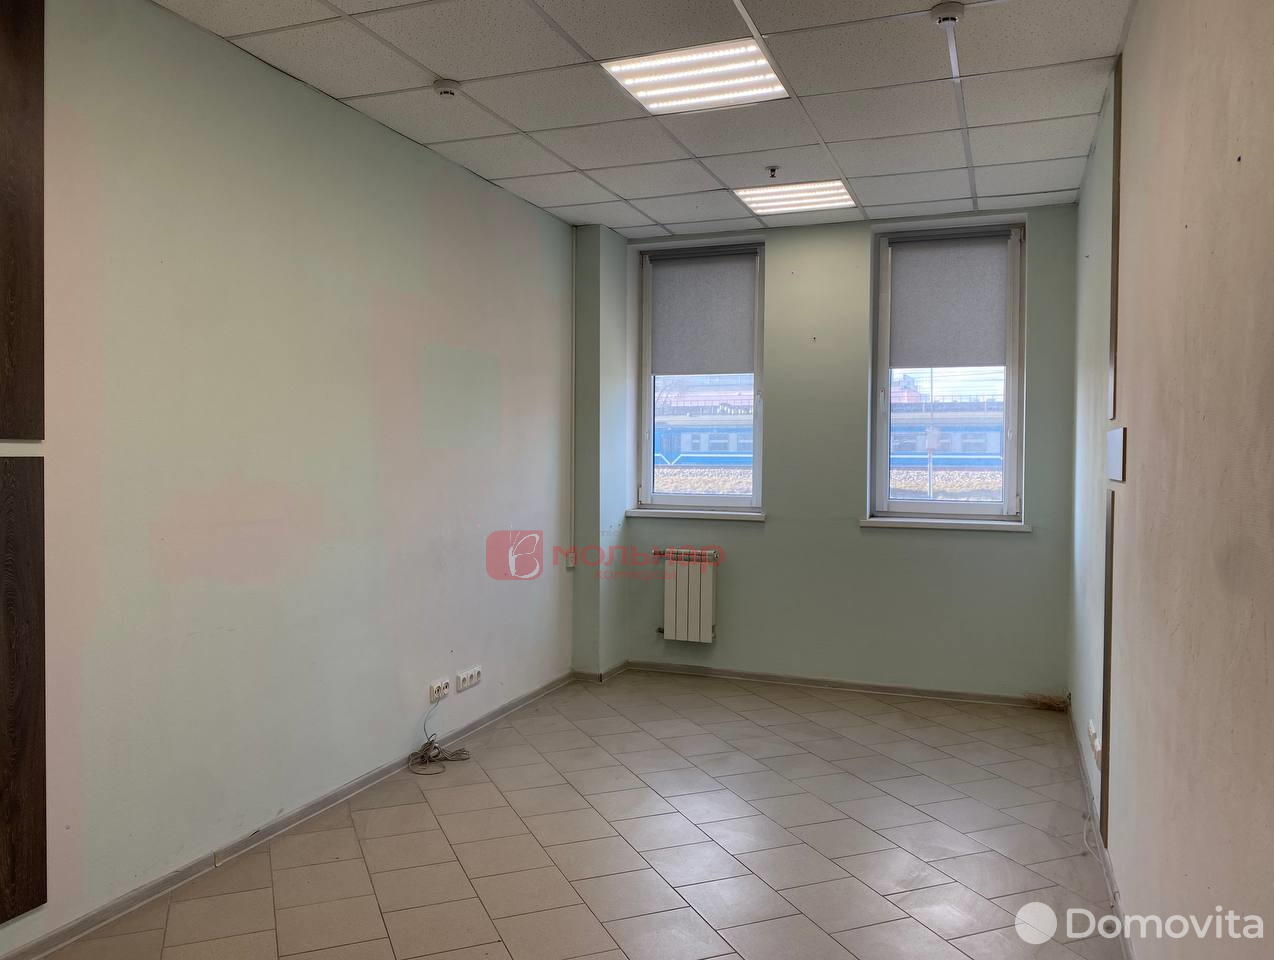 Аренда офиса на ул. Тимирязева, д. 67 в Минске, 152EUR, код 11678 - фото 3